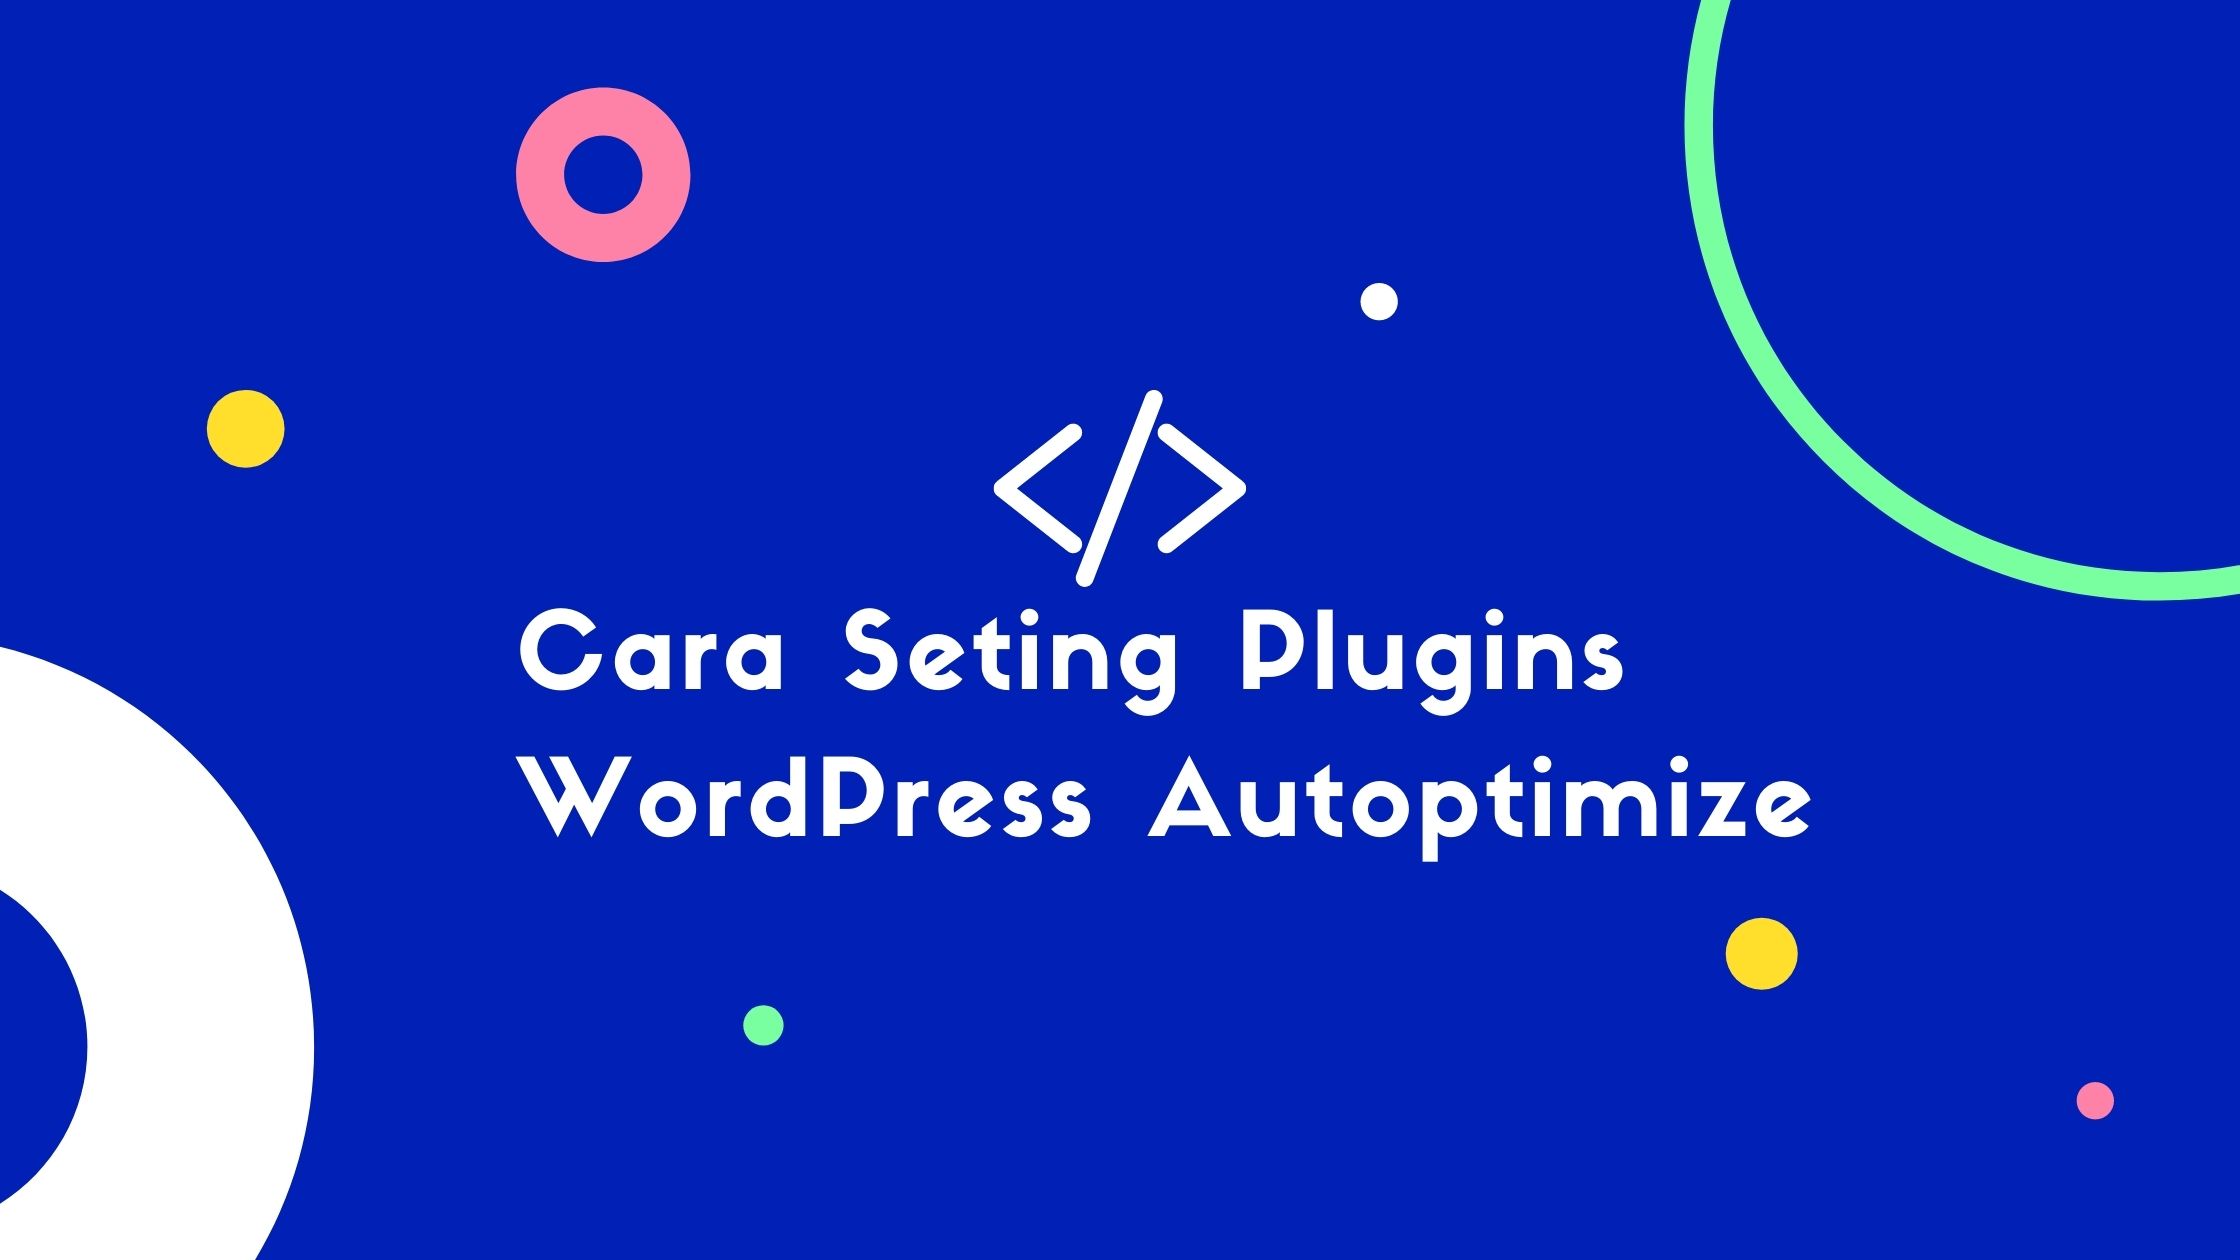 Cara Seting Plugins WordPress Autoptimize 1 Cara Seting Plugins WordPress Autoptimize